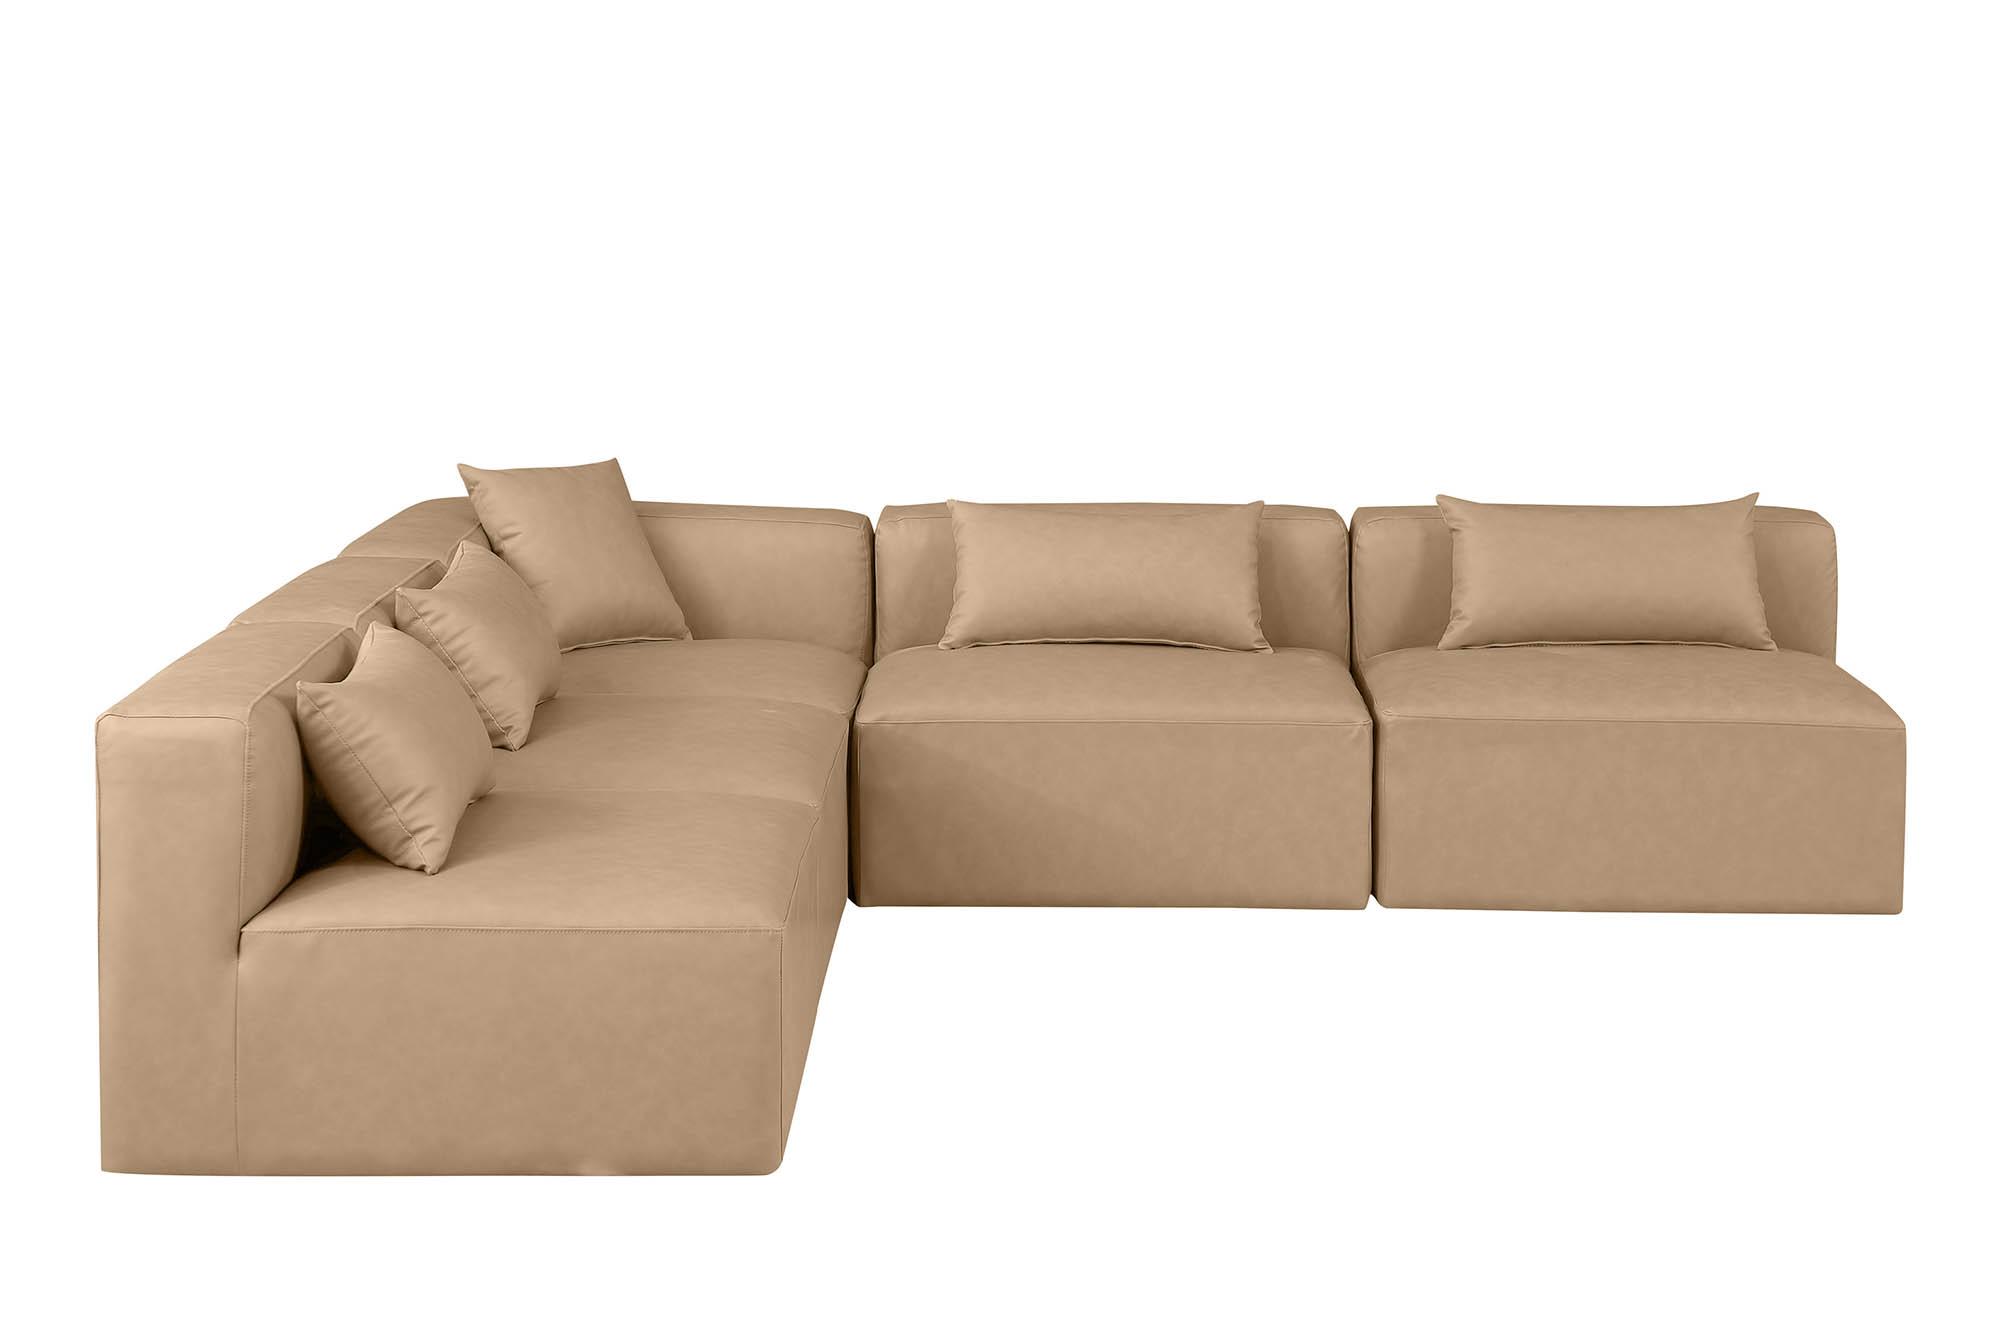 

    
Meridian Furniture CUBE 668Tan-Sec5B Modular Sectional Sofa Tan 668Tan-Sec5B
